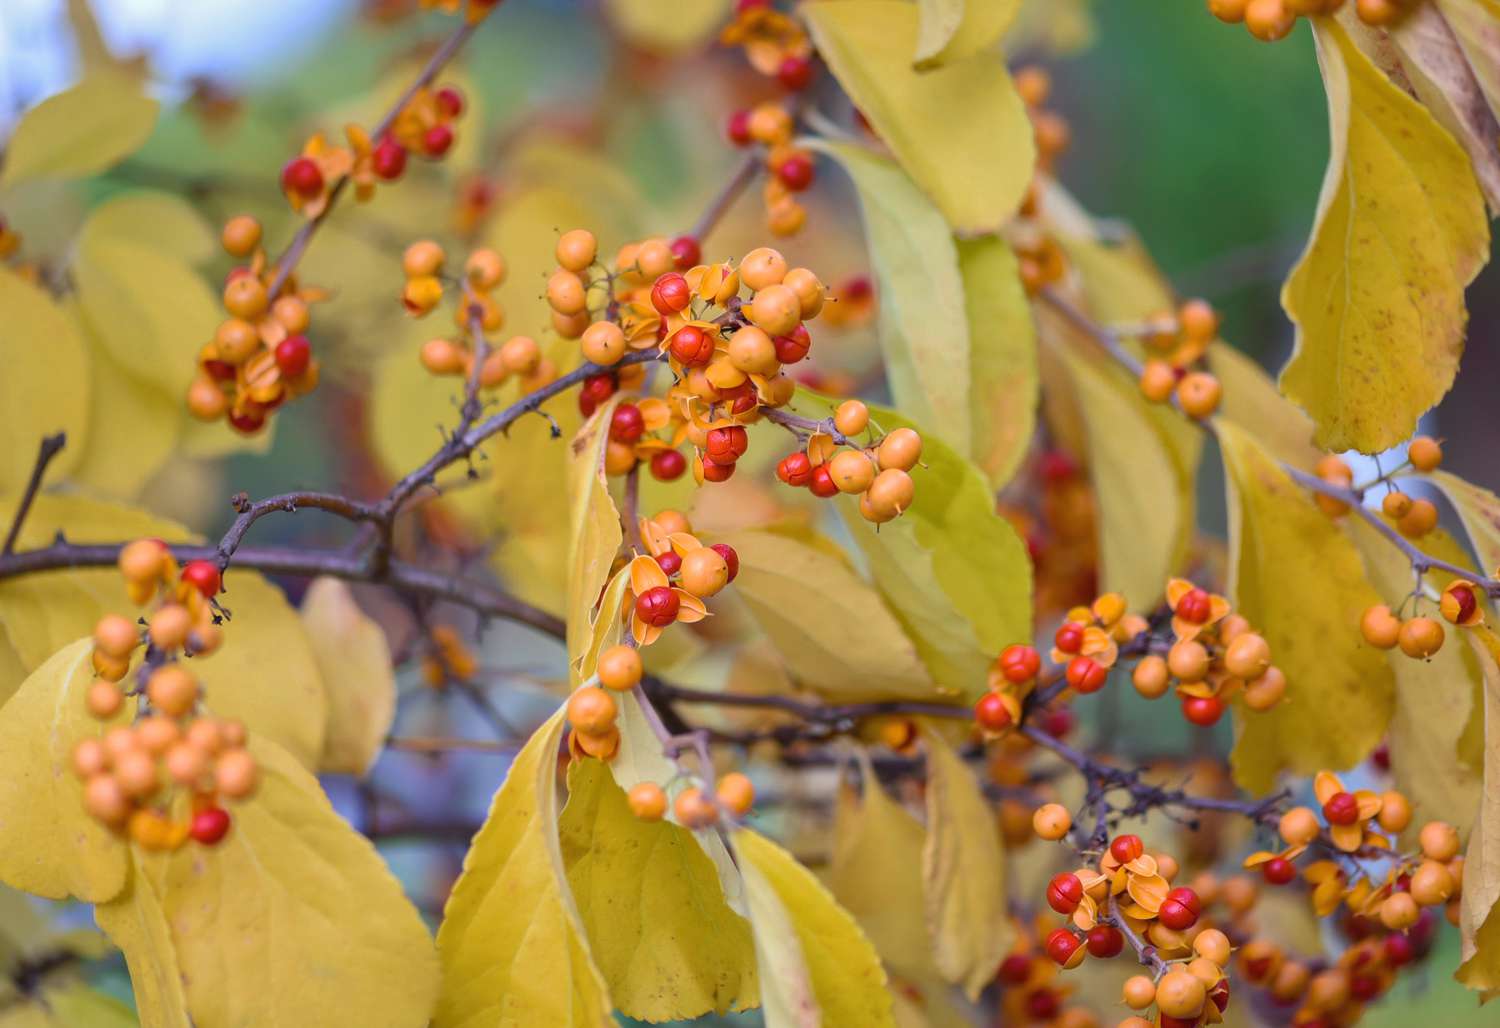 Orientalische Bittersüßpflanze mit gelben Blättern und roten und orangen Beeren